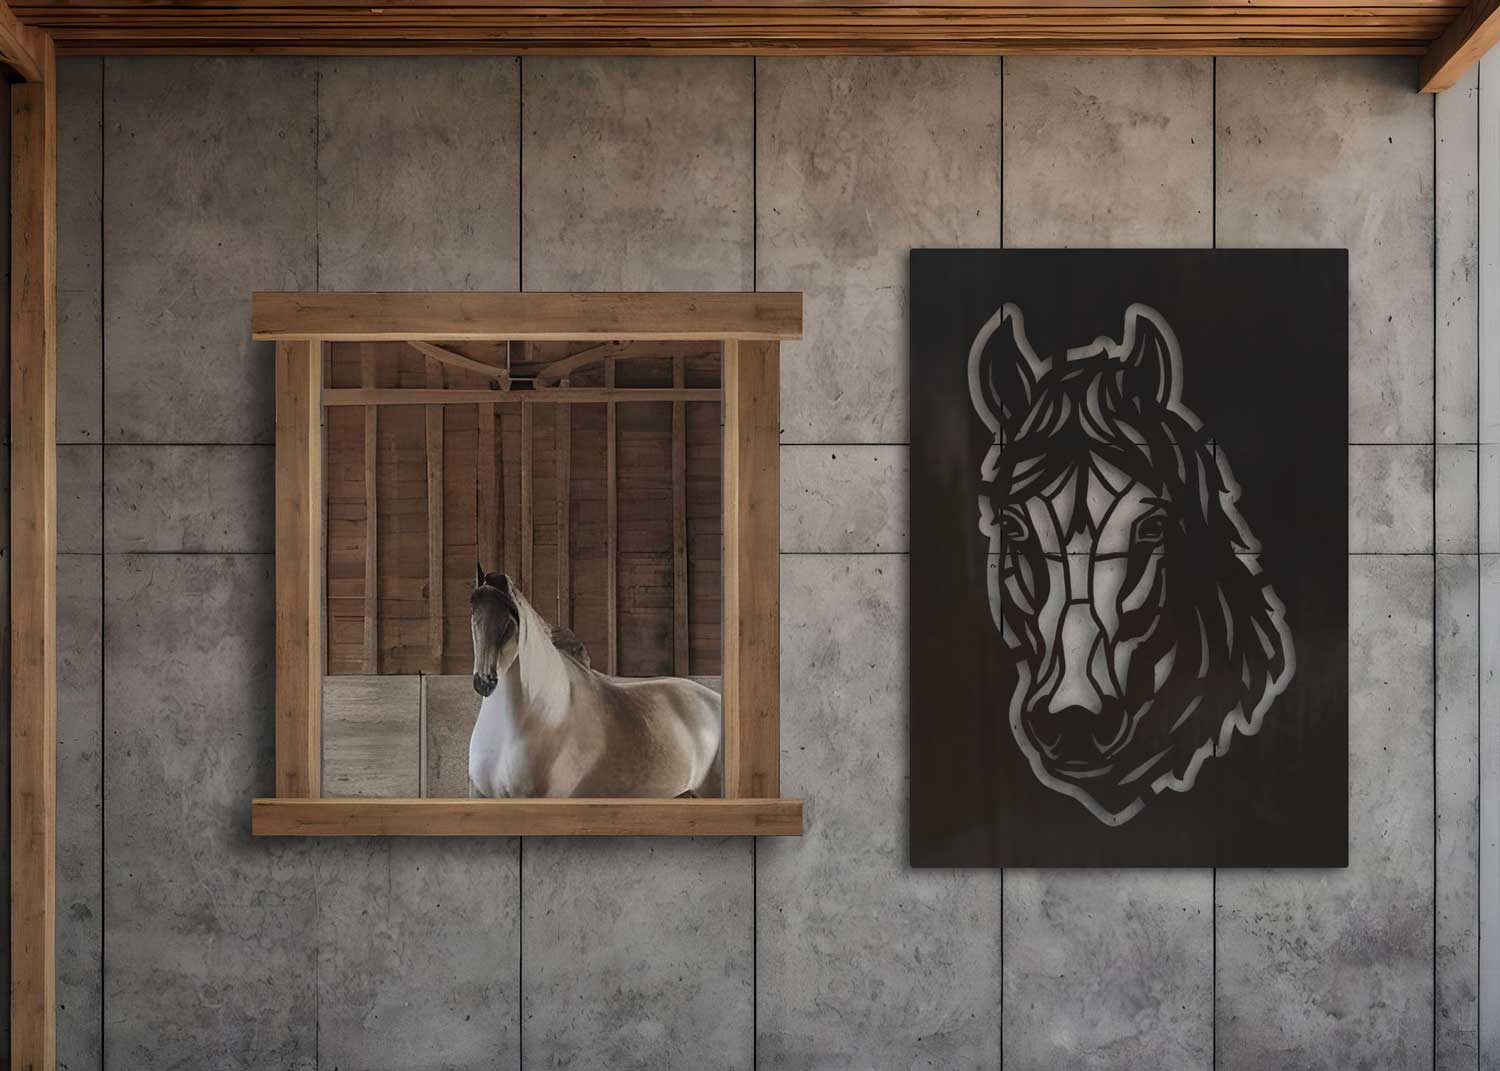 Cortenstaal paarden leuke decoratie aan de wand in de manege